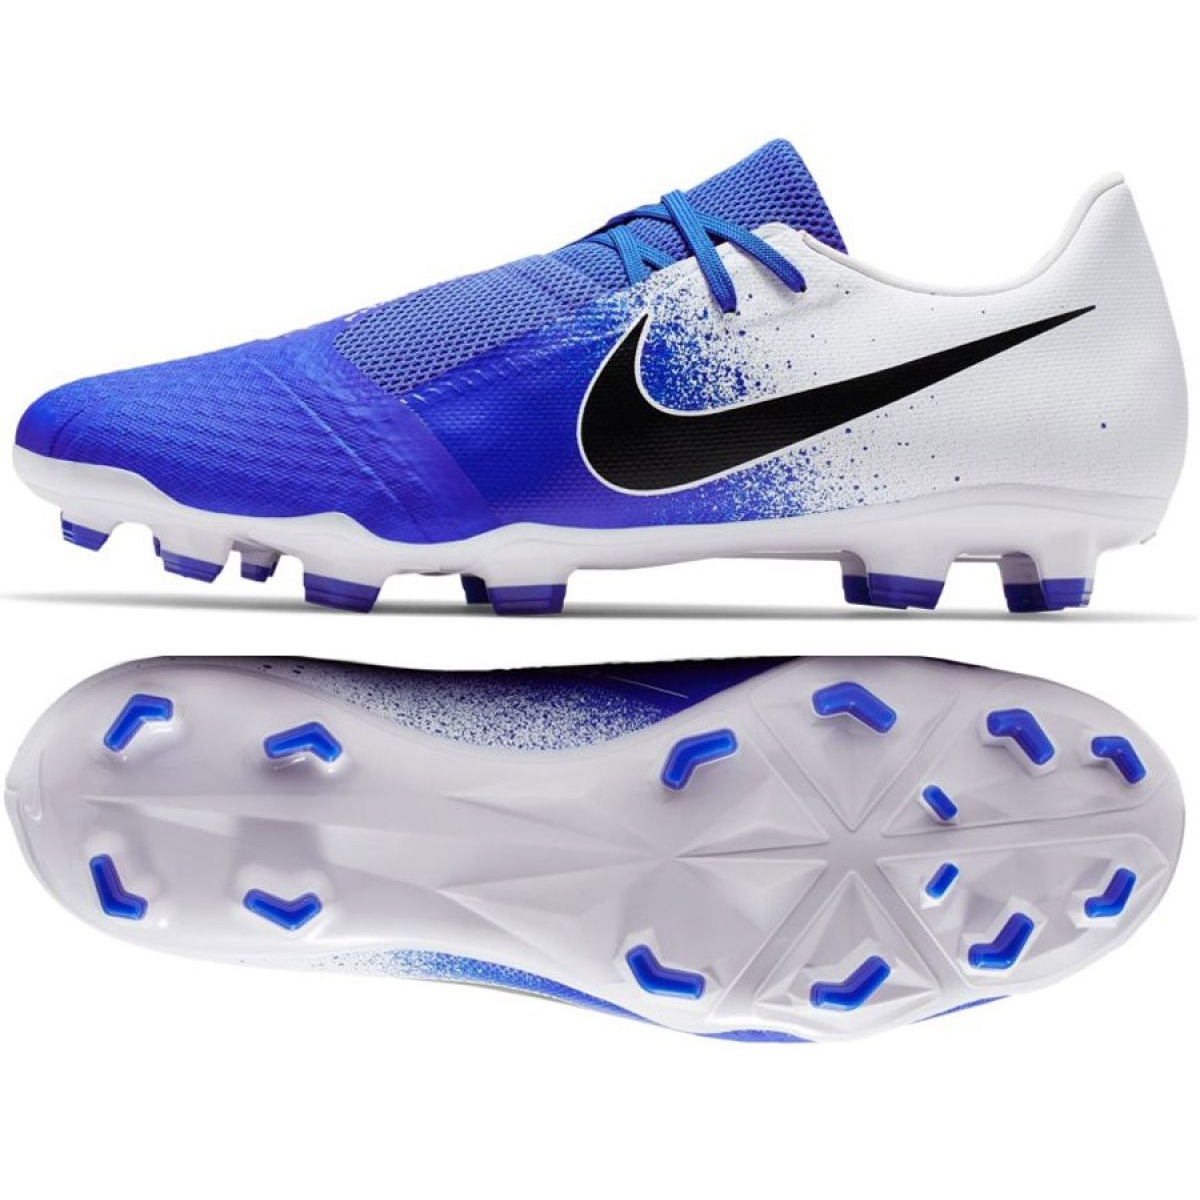 Buty piłkarskie Nike phantom venom academy fg m ao0566-104 wielokolorowe niebieskie